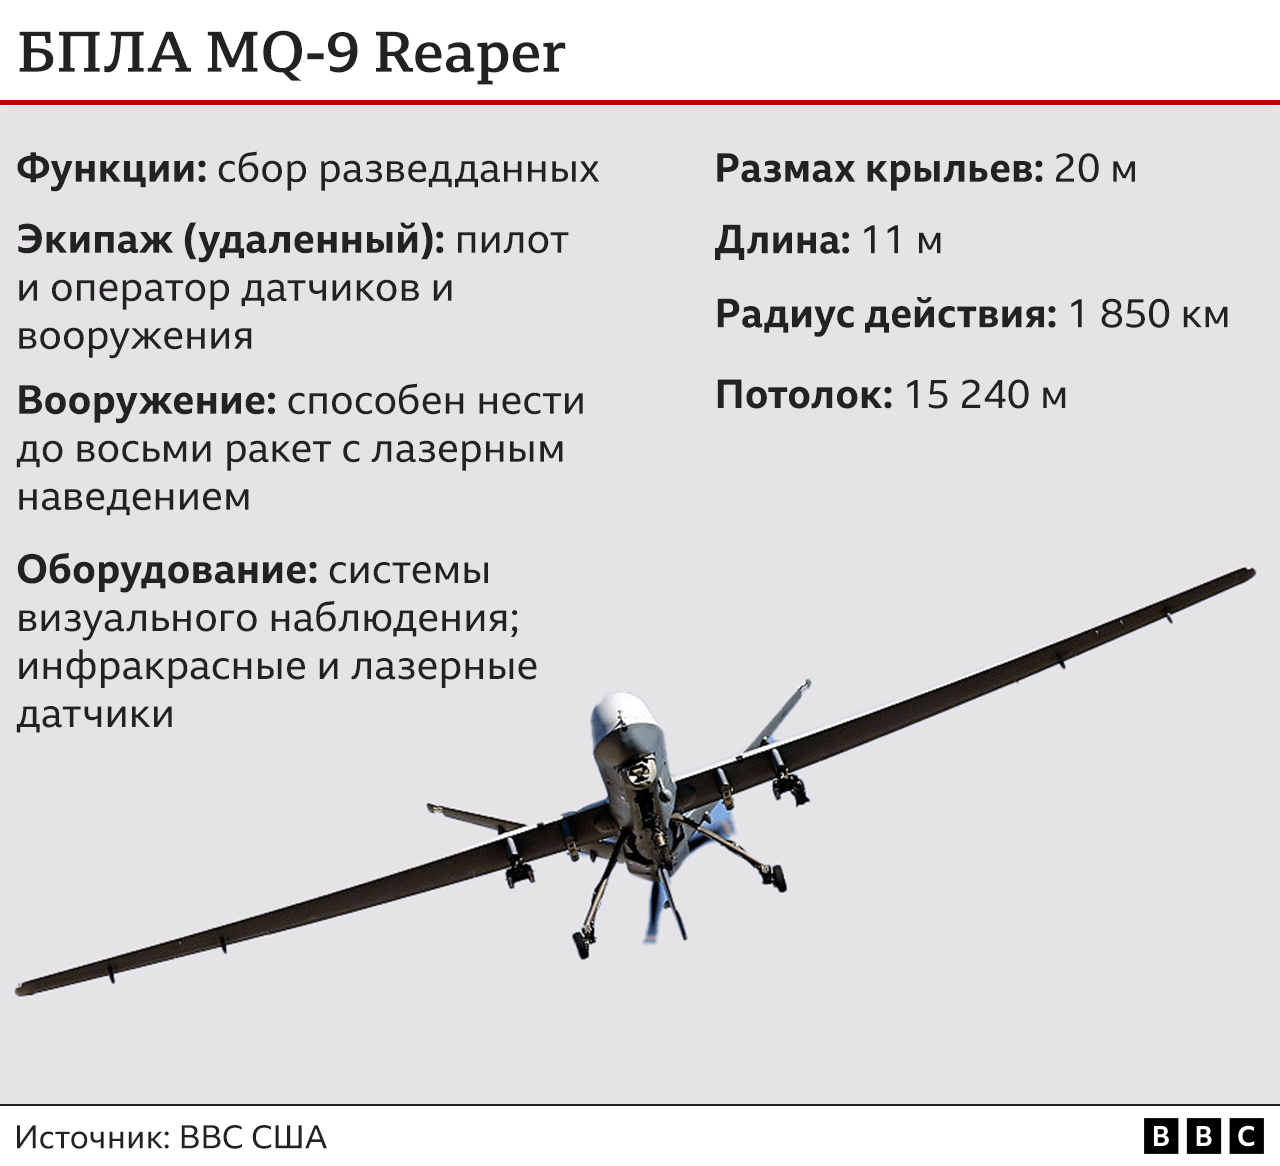 Американский разведывательный беспилотник MQ-9 Reaper упал в Черное море  после перехвата российским Су-27 - BBC News Русская служба